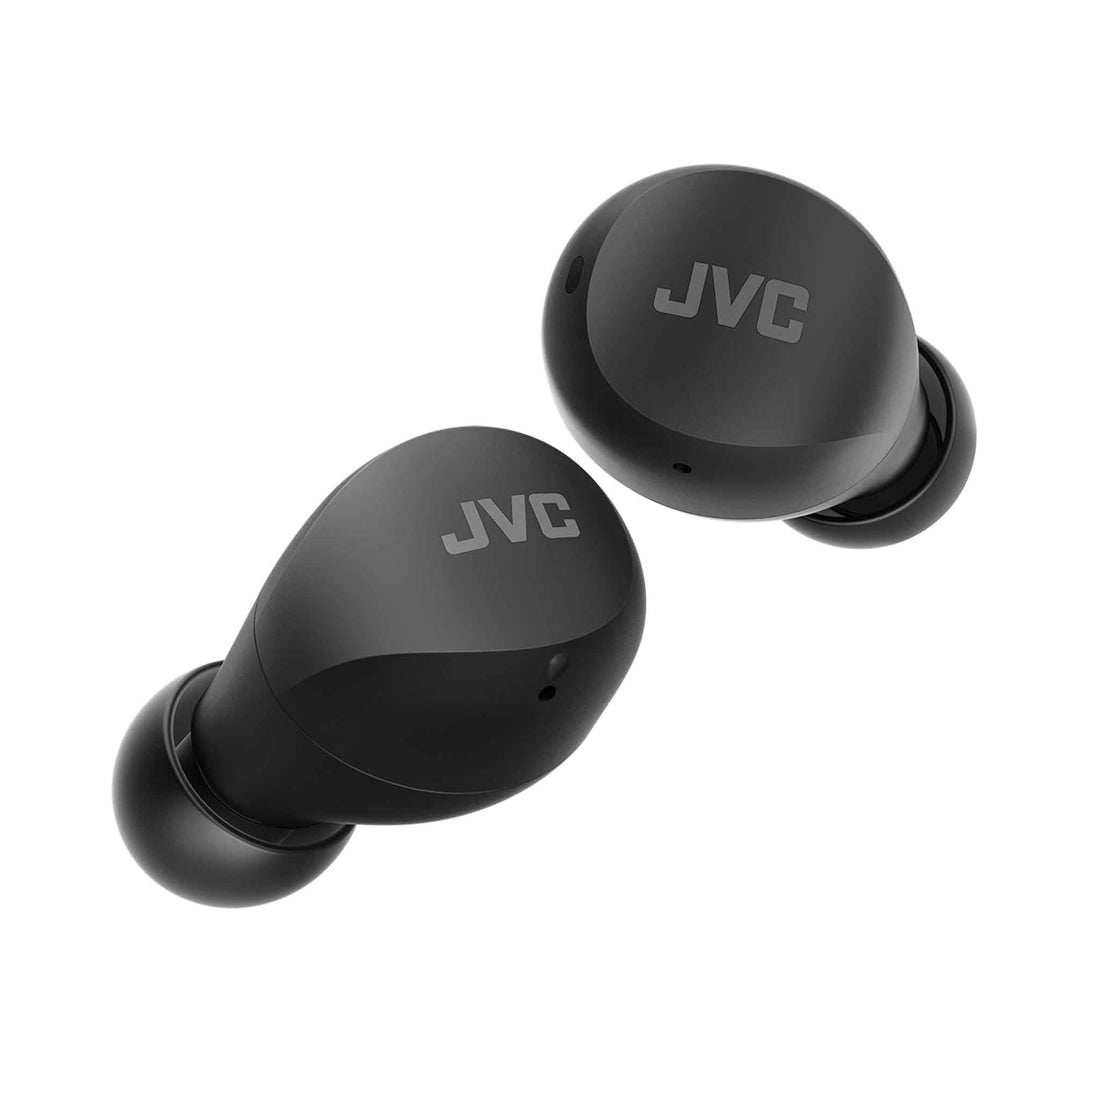 HA-Z66T JVC Gumy wireless earbuds in black